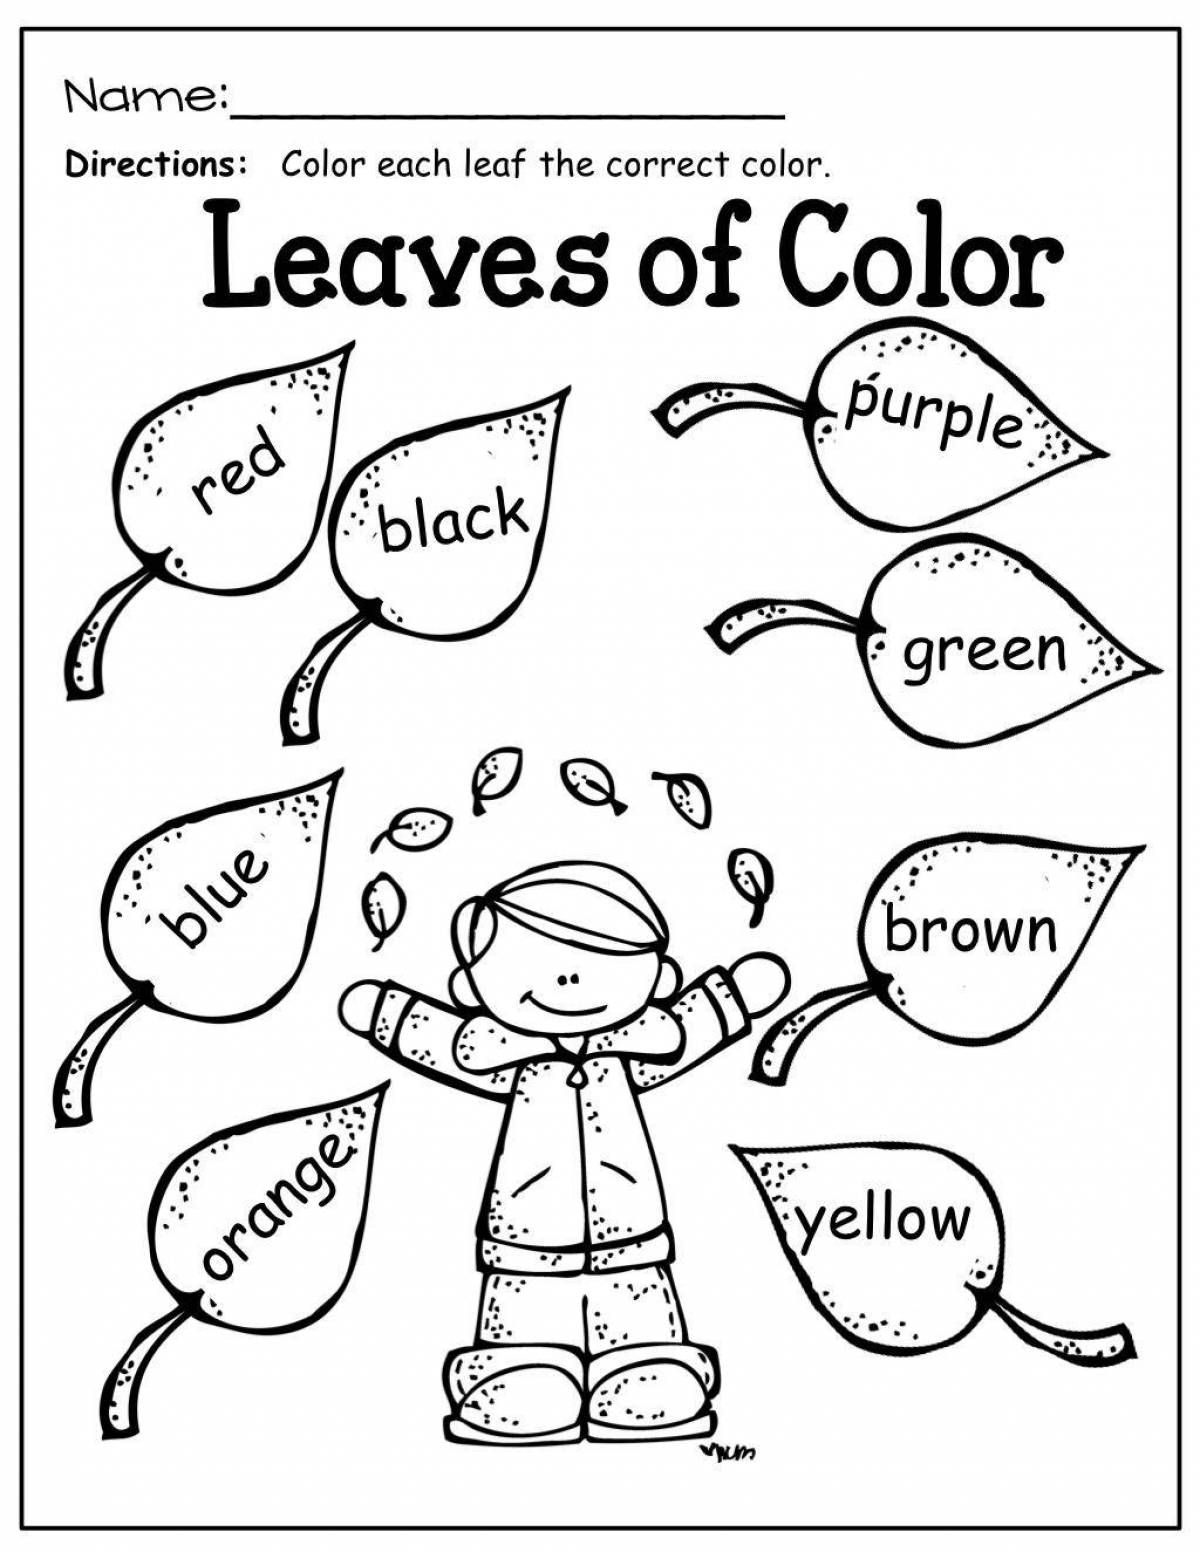 Творческая раскраска на английском языке для детей